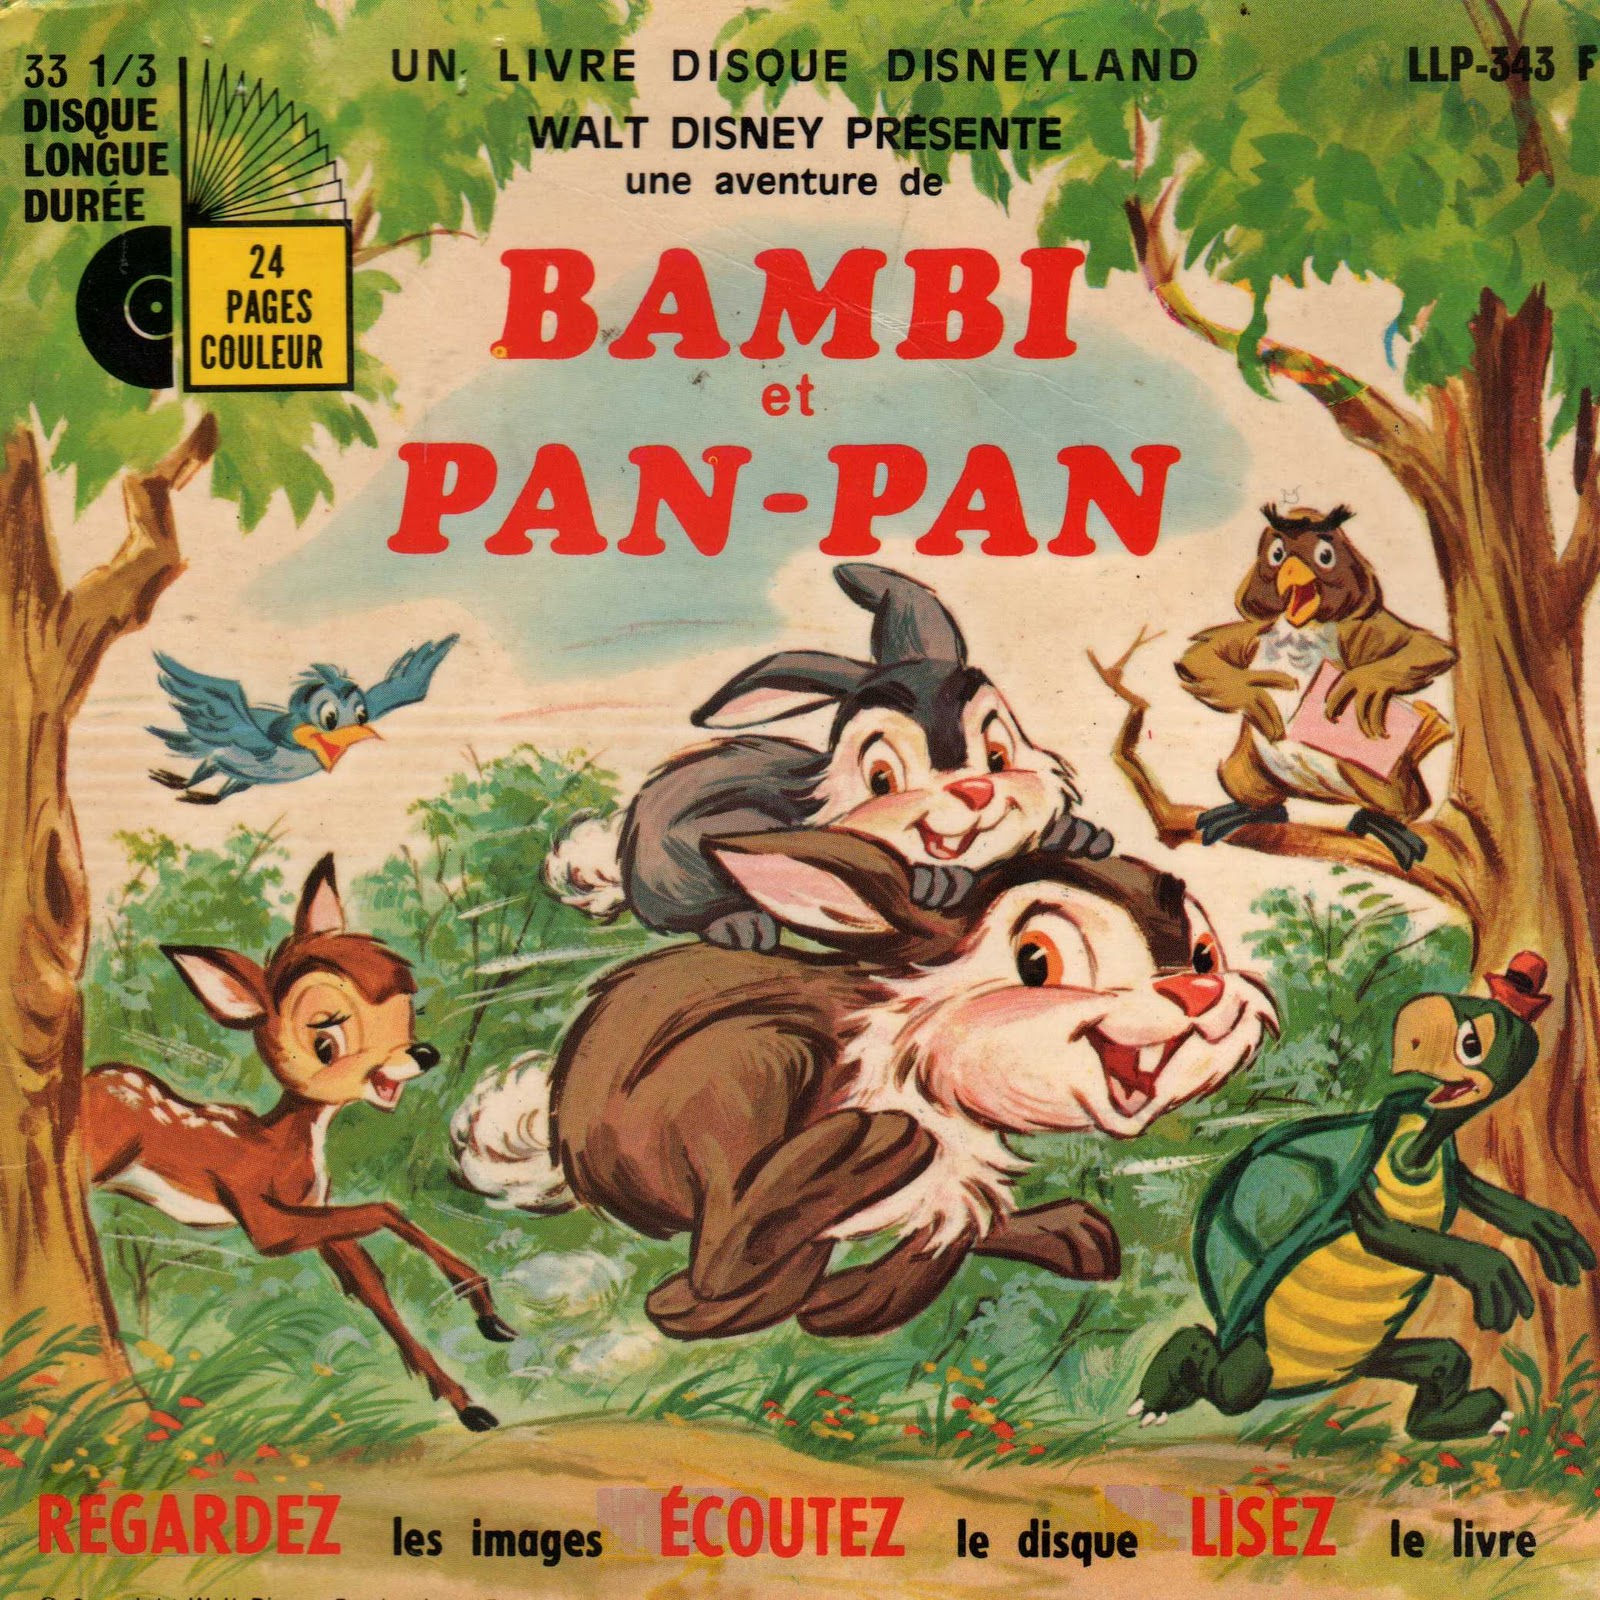 llp 343 f une aventure de bambi et pan